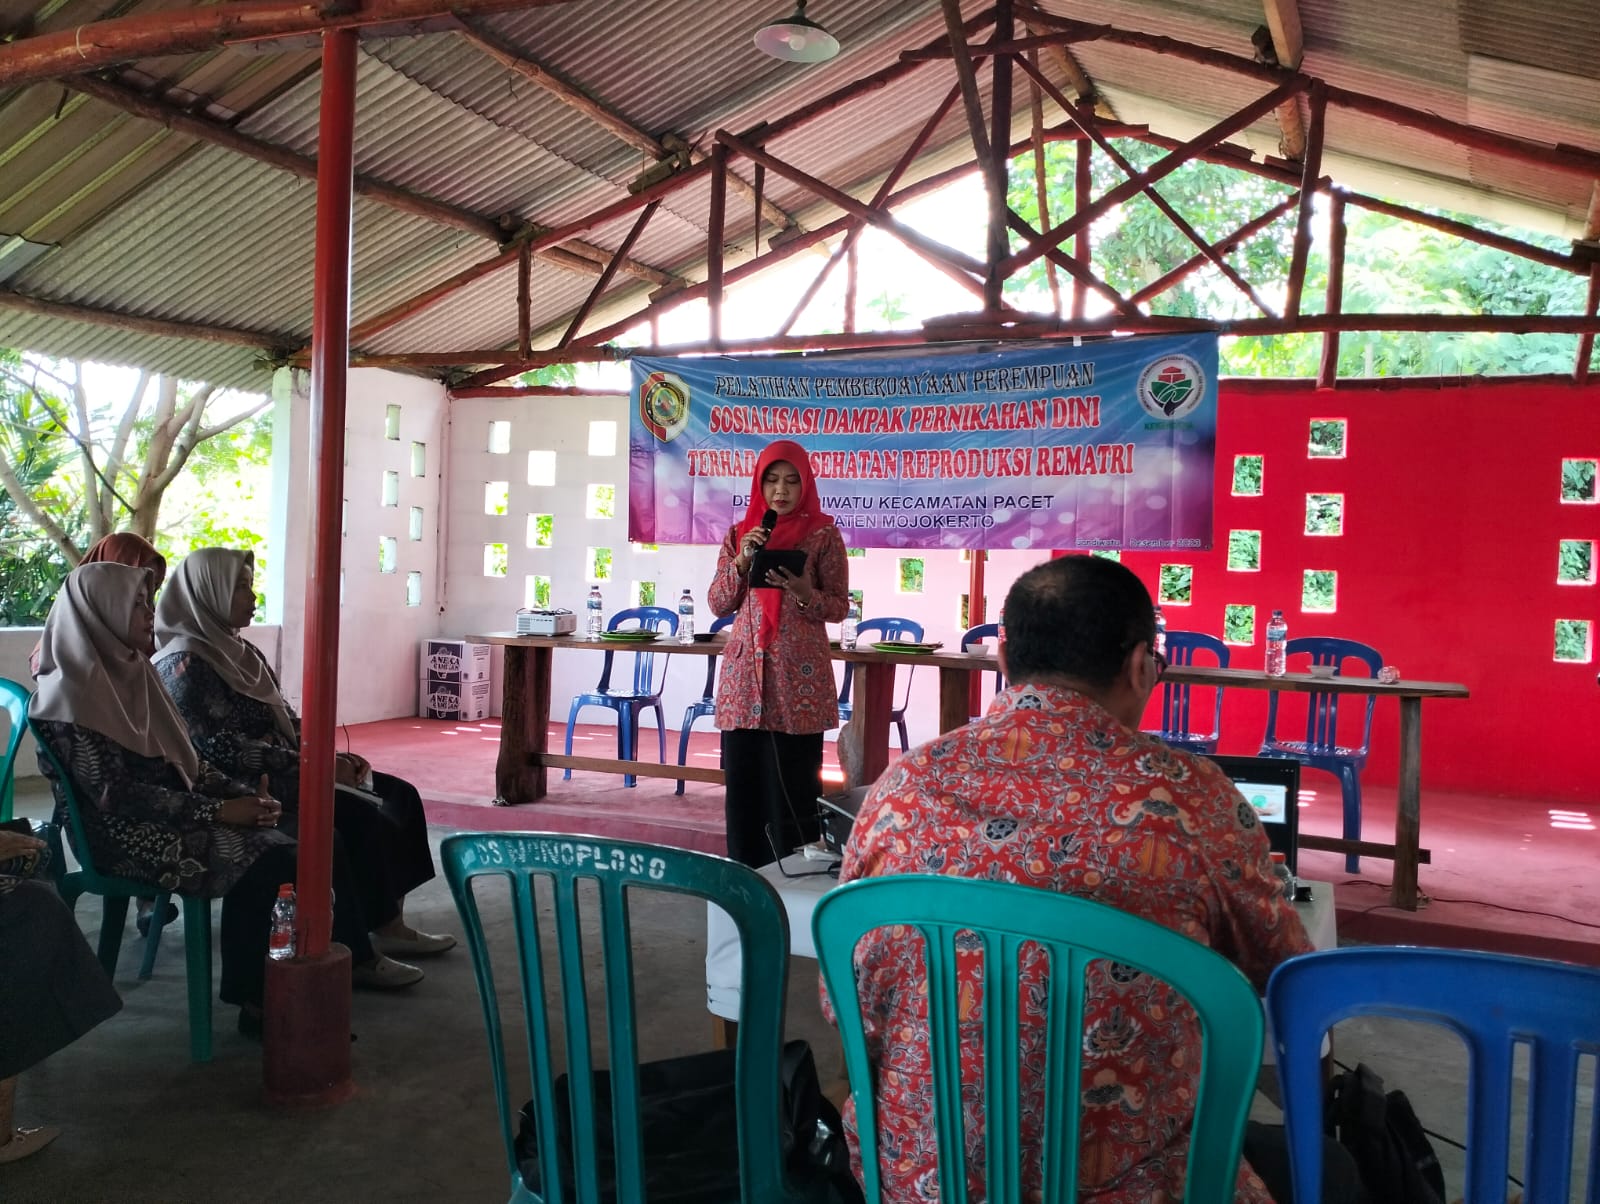 Sosialisasi Dampak Pernikahan Dini Terhadap Kesehatan Reproduksi Rematri di Desa Candiwatu yang disampaikan Oleh Kepala UPTD Puskesmas Pandan